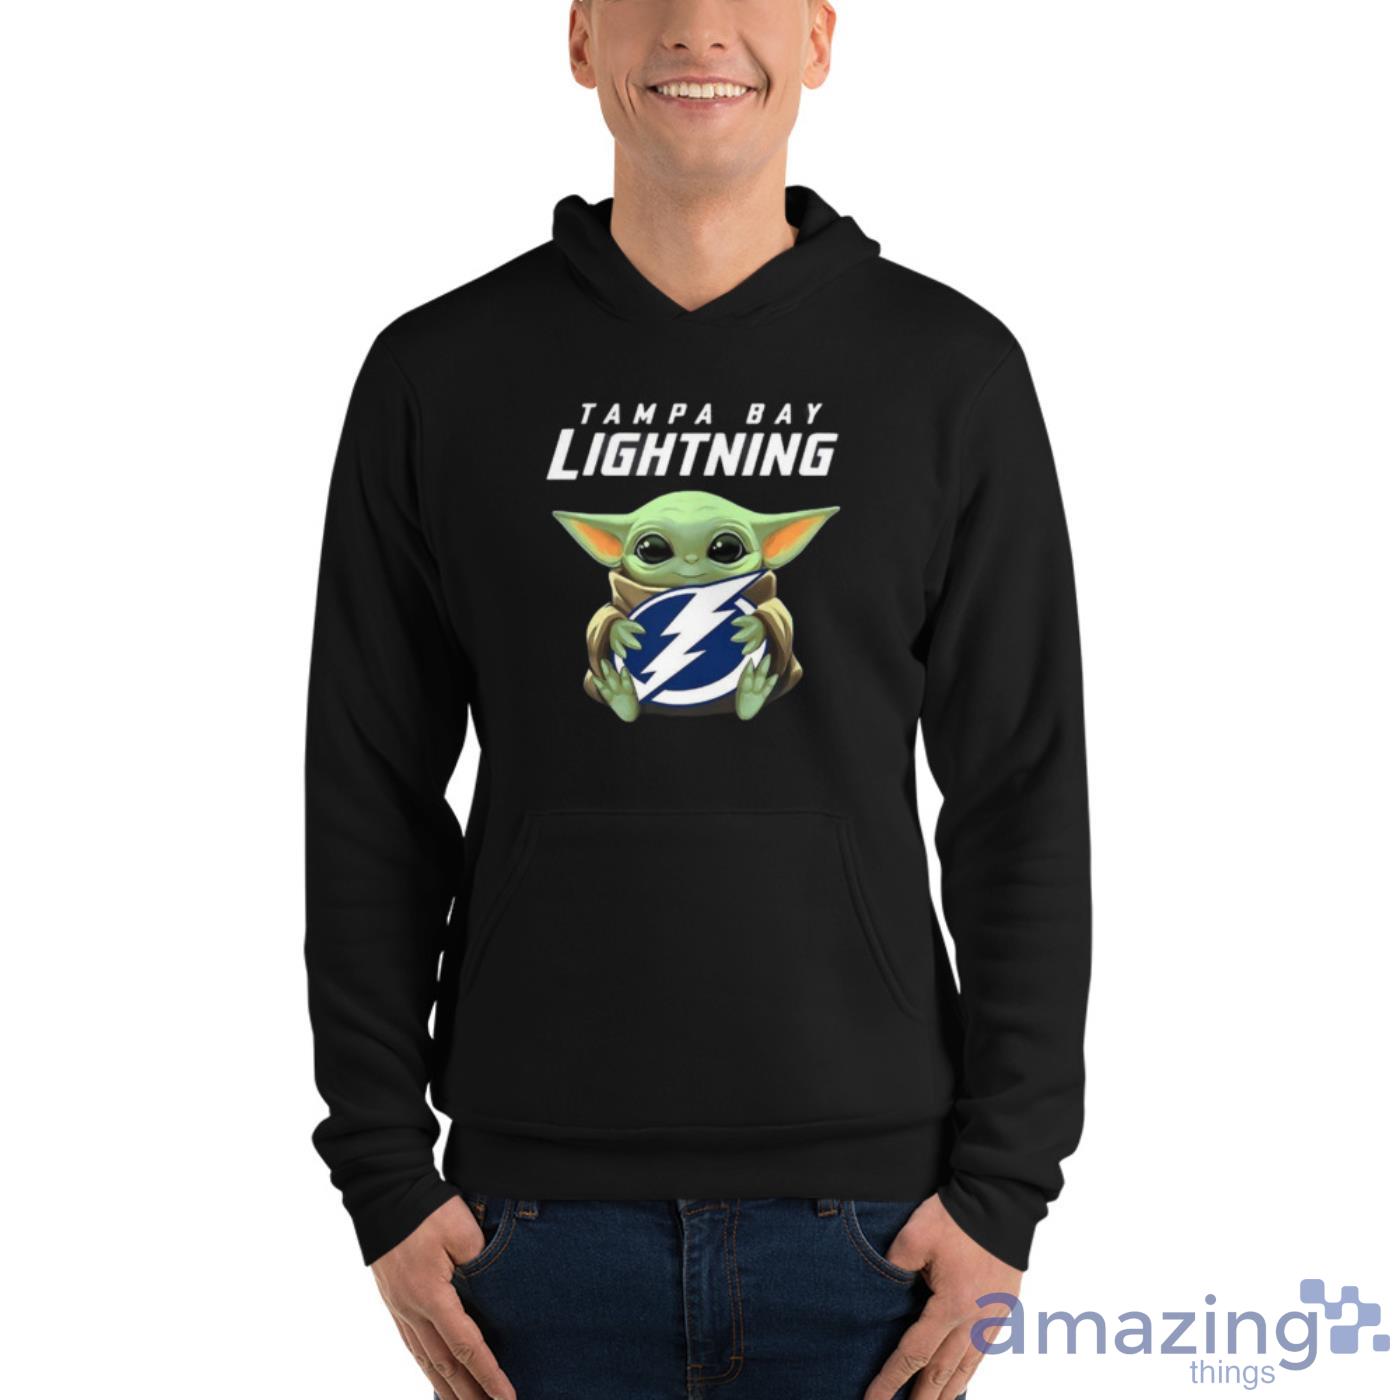 Tampa Bay Lightning Baby Yoda T-shirt Black Lightning Hockey 